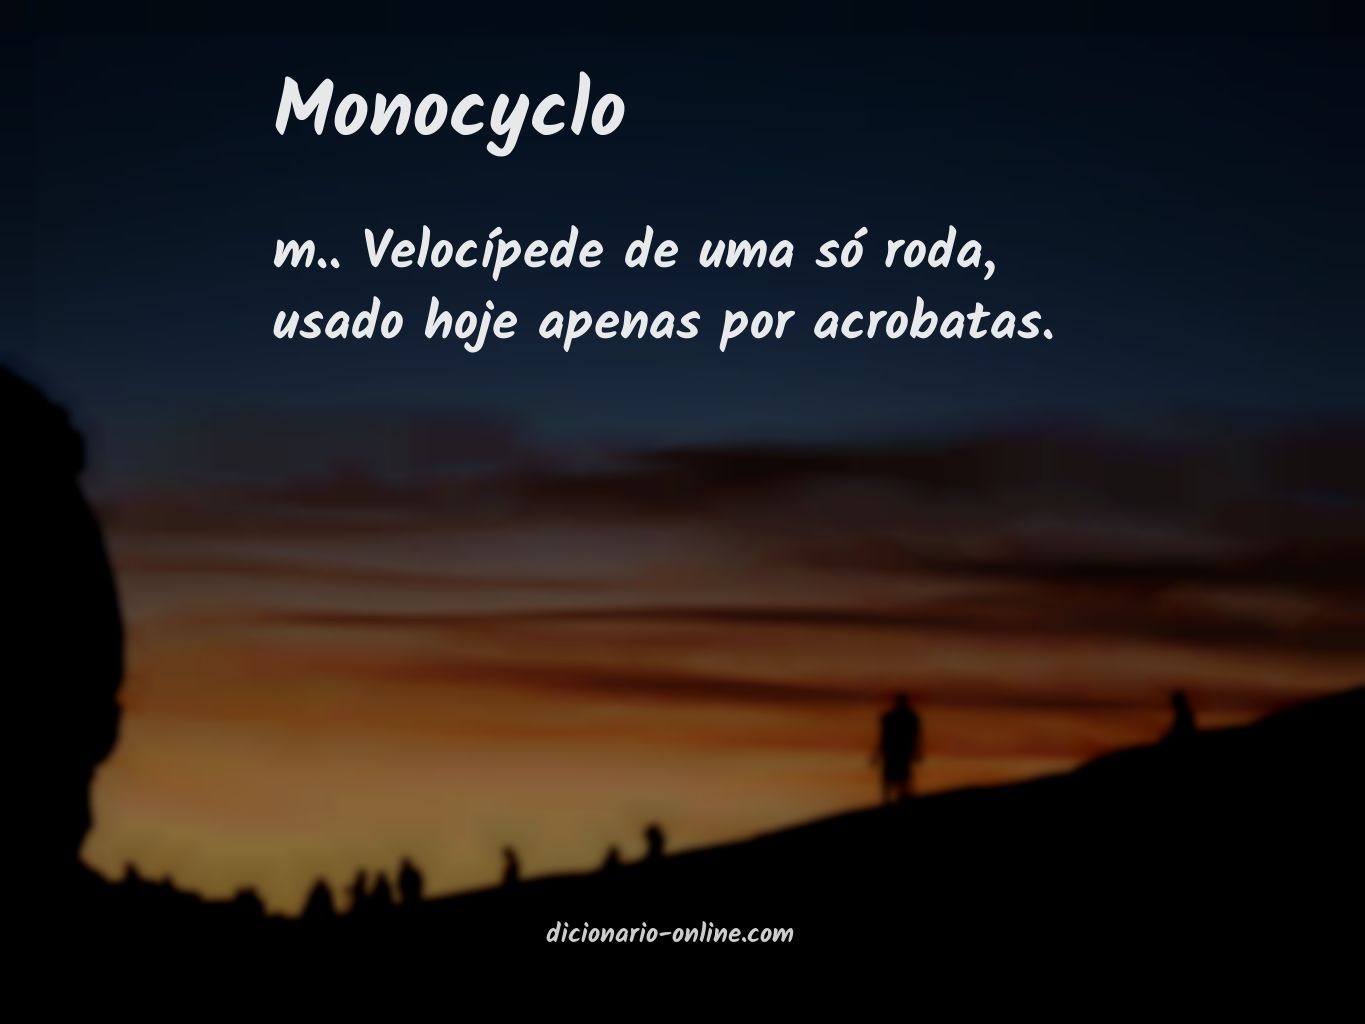 Significado de monocyclo